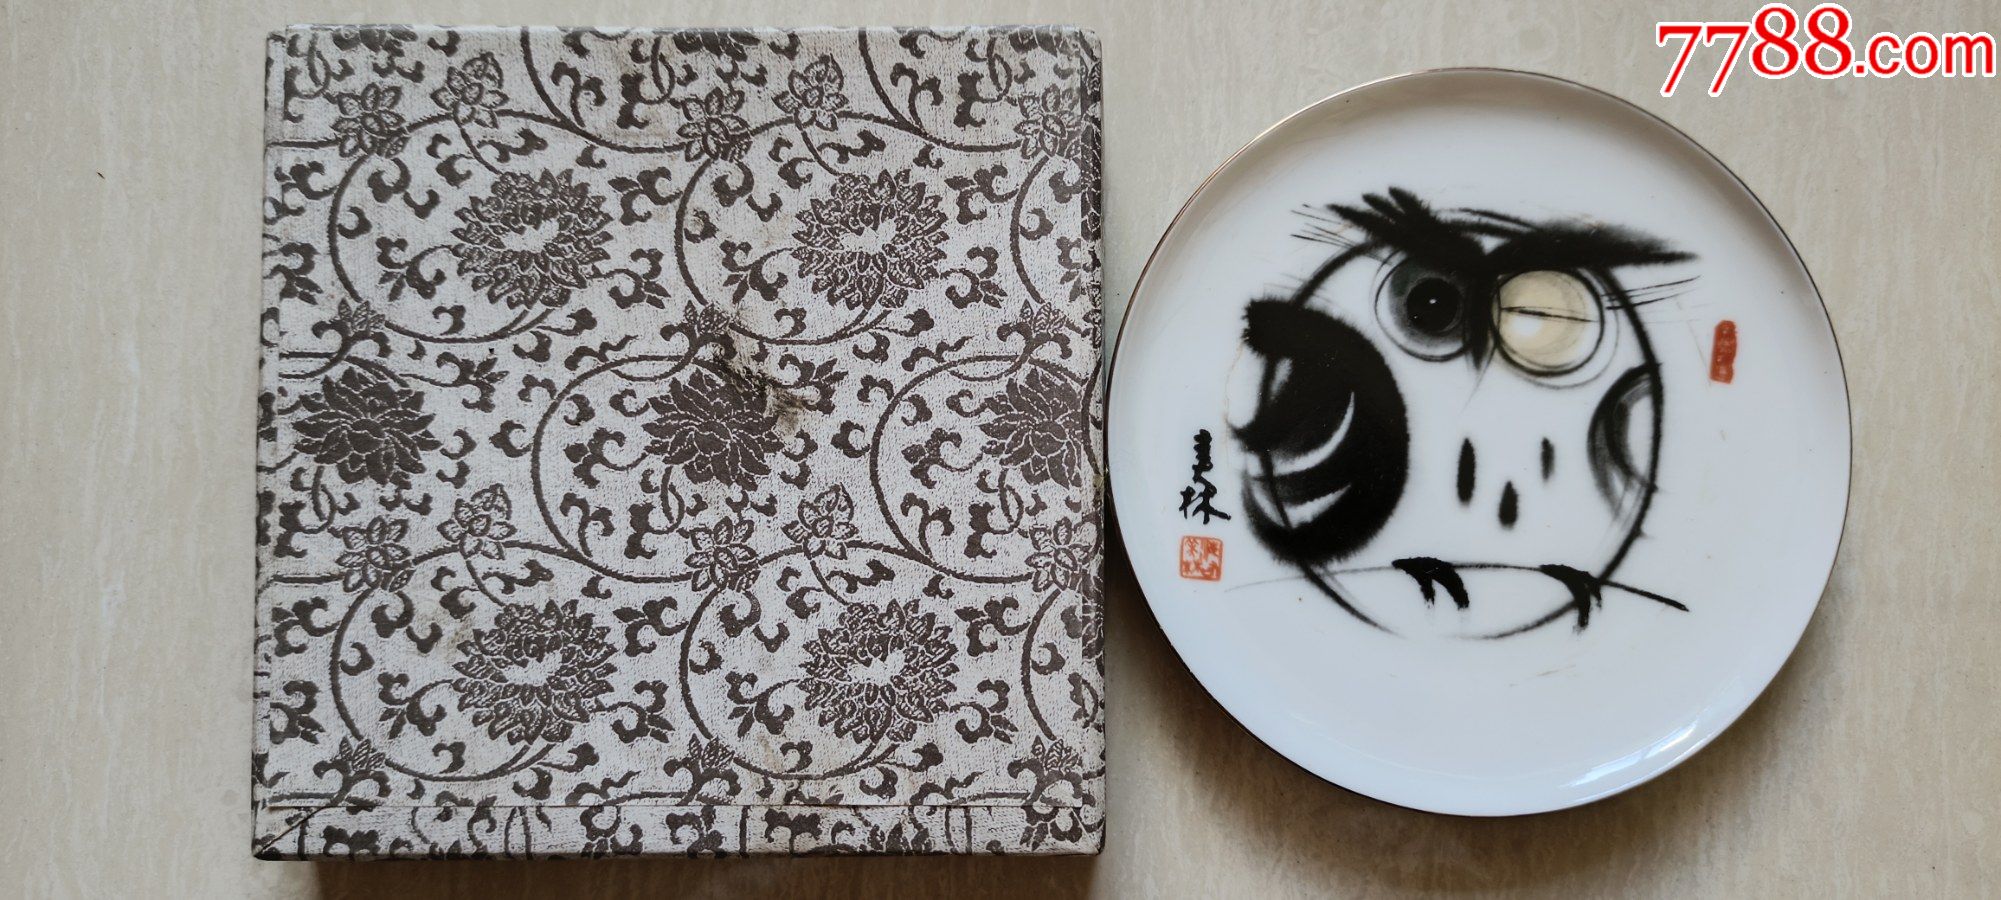 上世纪九十年代前后工艺美术大师韩美林画作猫头鹰白瓷盘(原盒)